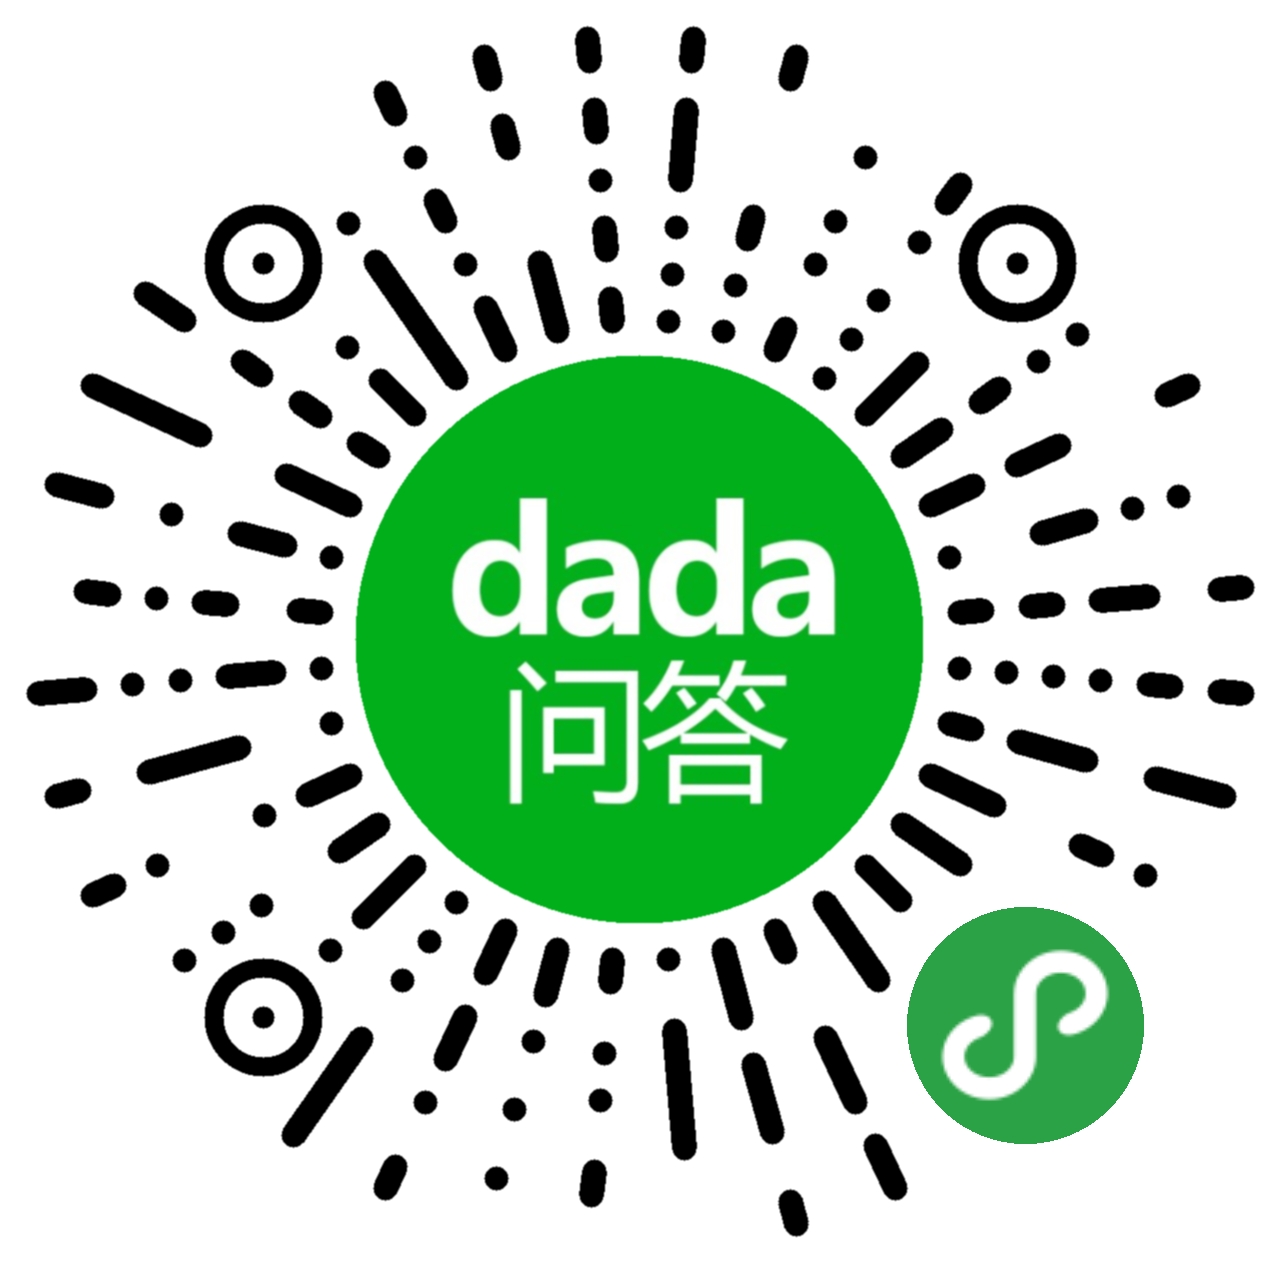 dada问答_dada问答小程序_dada问答微信小程序